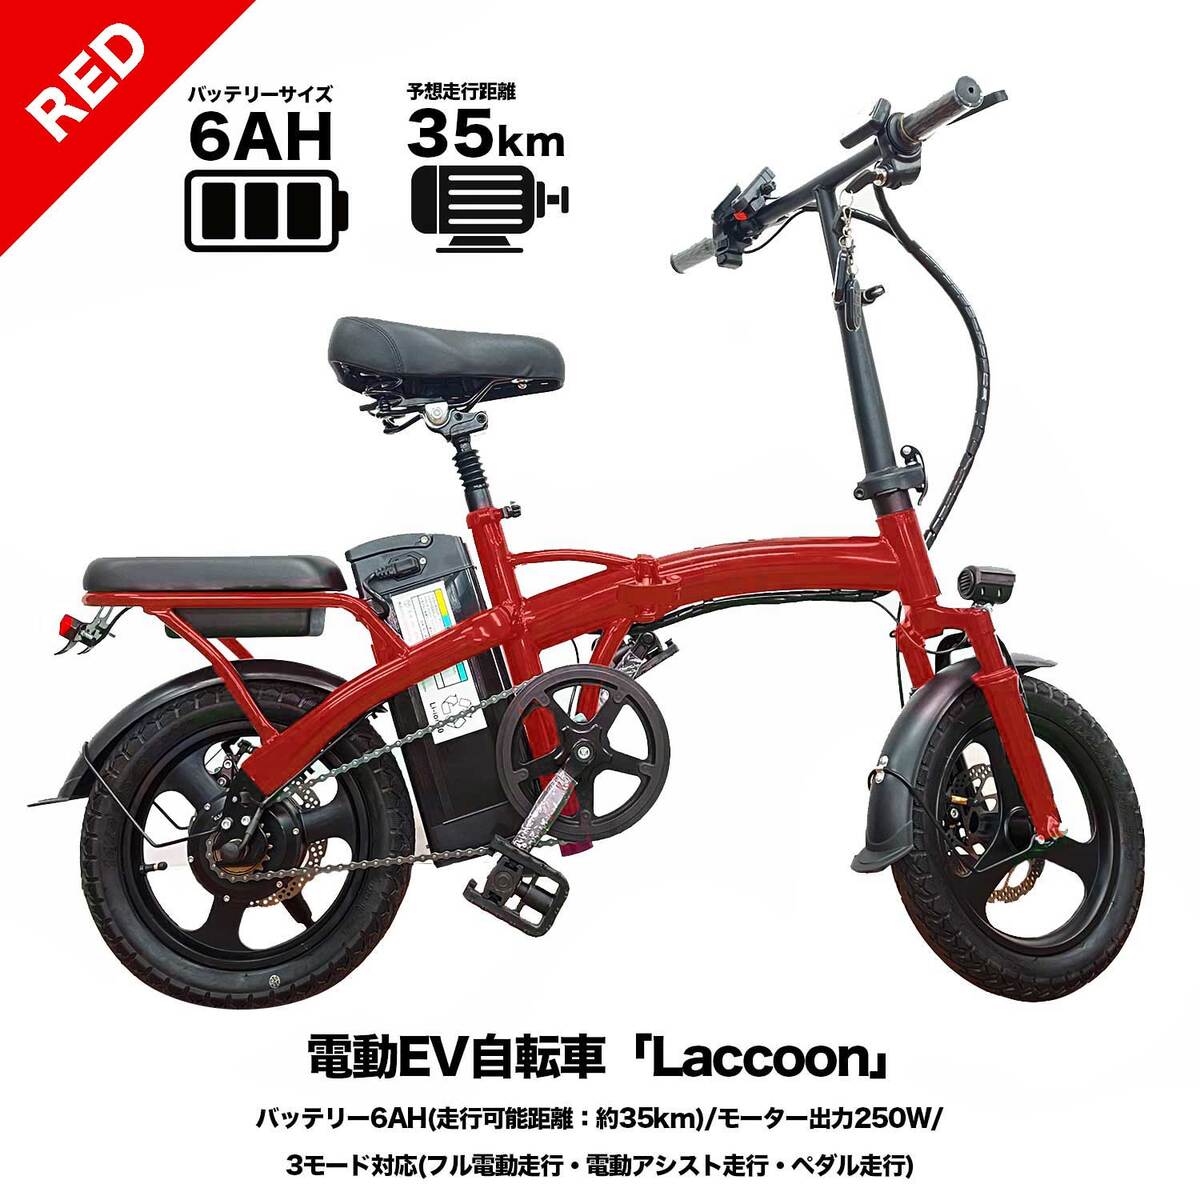 フル電動自転車 アシスト自転車 モペット型自転車 フル電動 laccoon